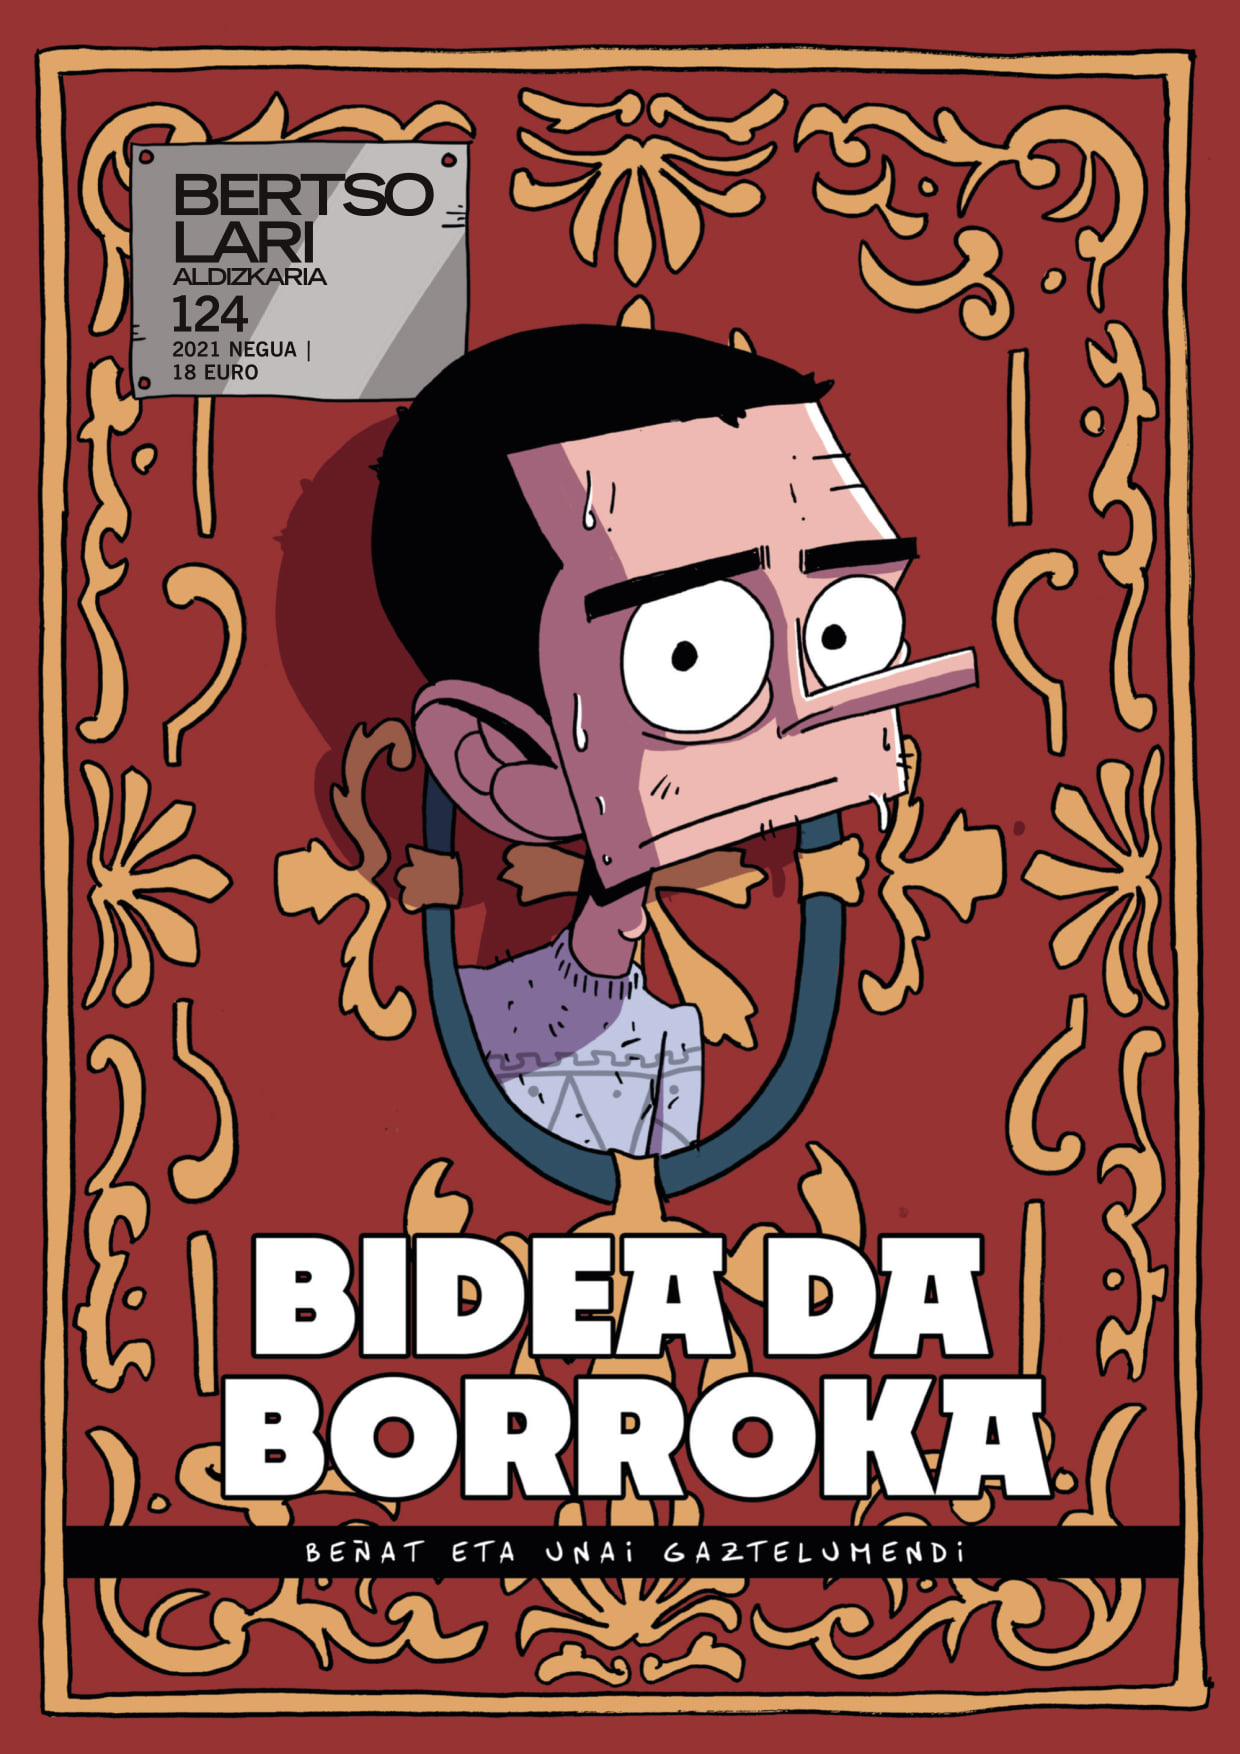 "Bidea da borroka", Bertsolari aldizkariaren komiki berria